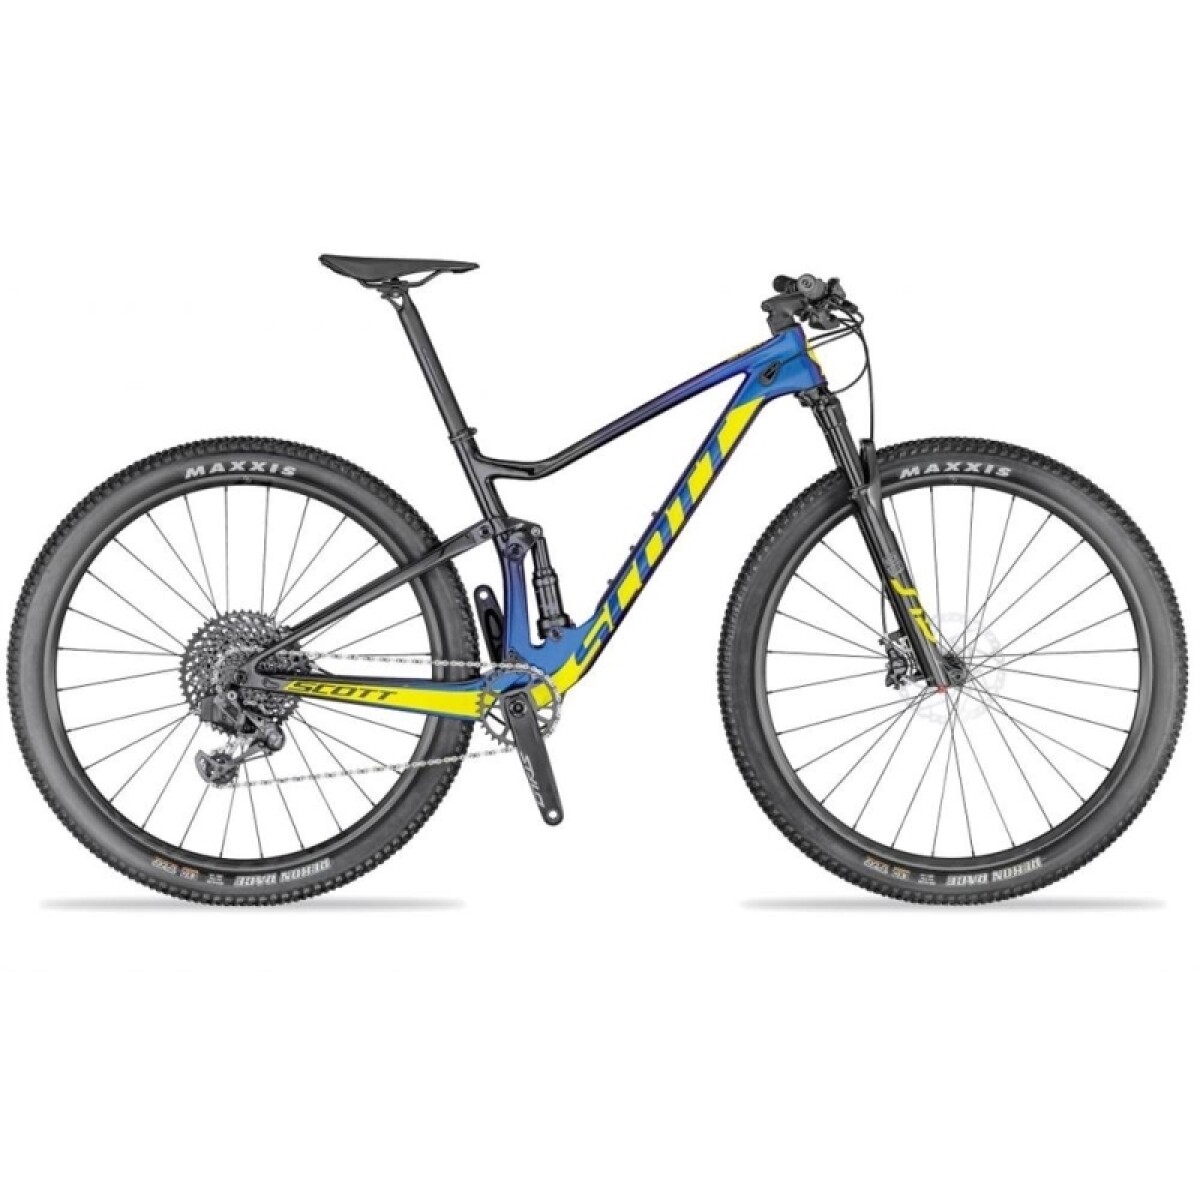 Bicicleta Scott Mtb Doble Suspencion Spark 900 Rc Team Issue Axs 2020 